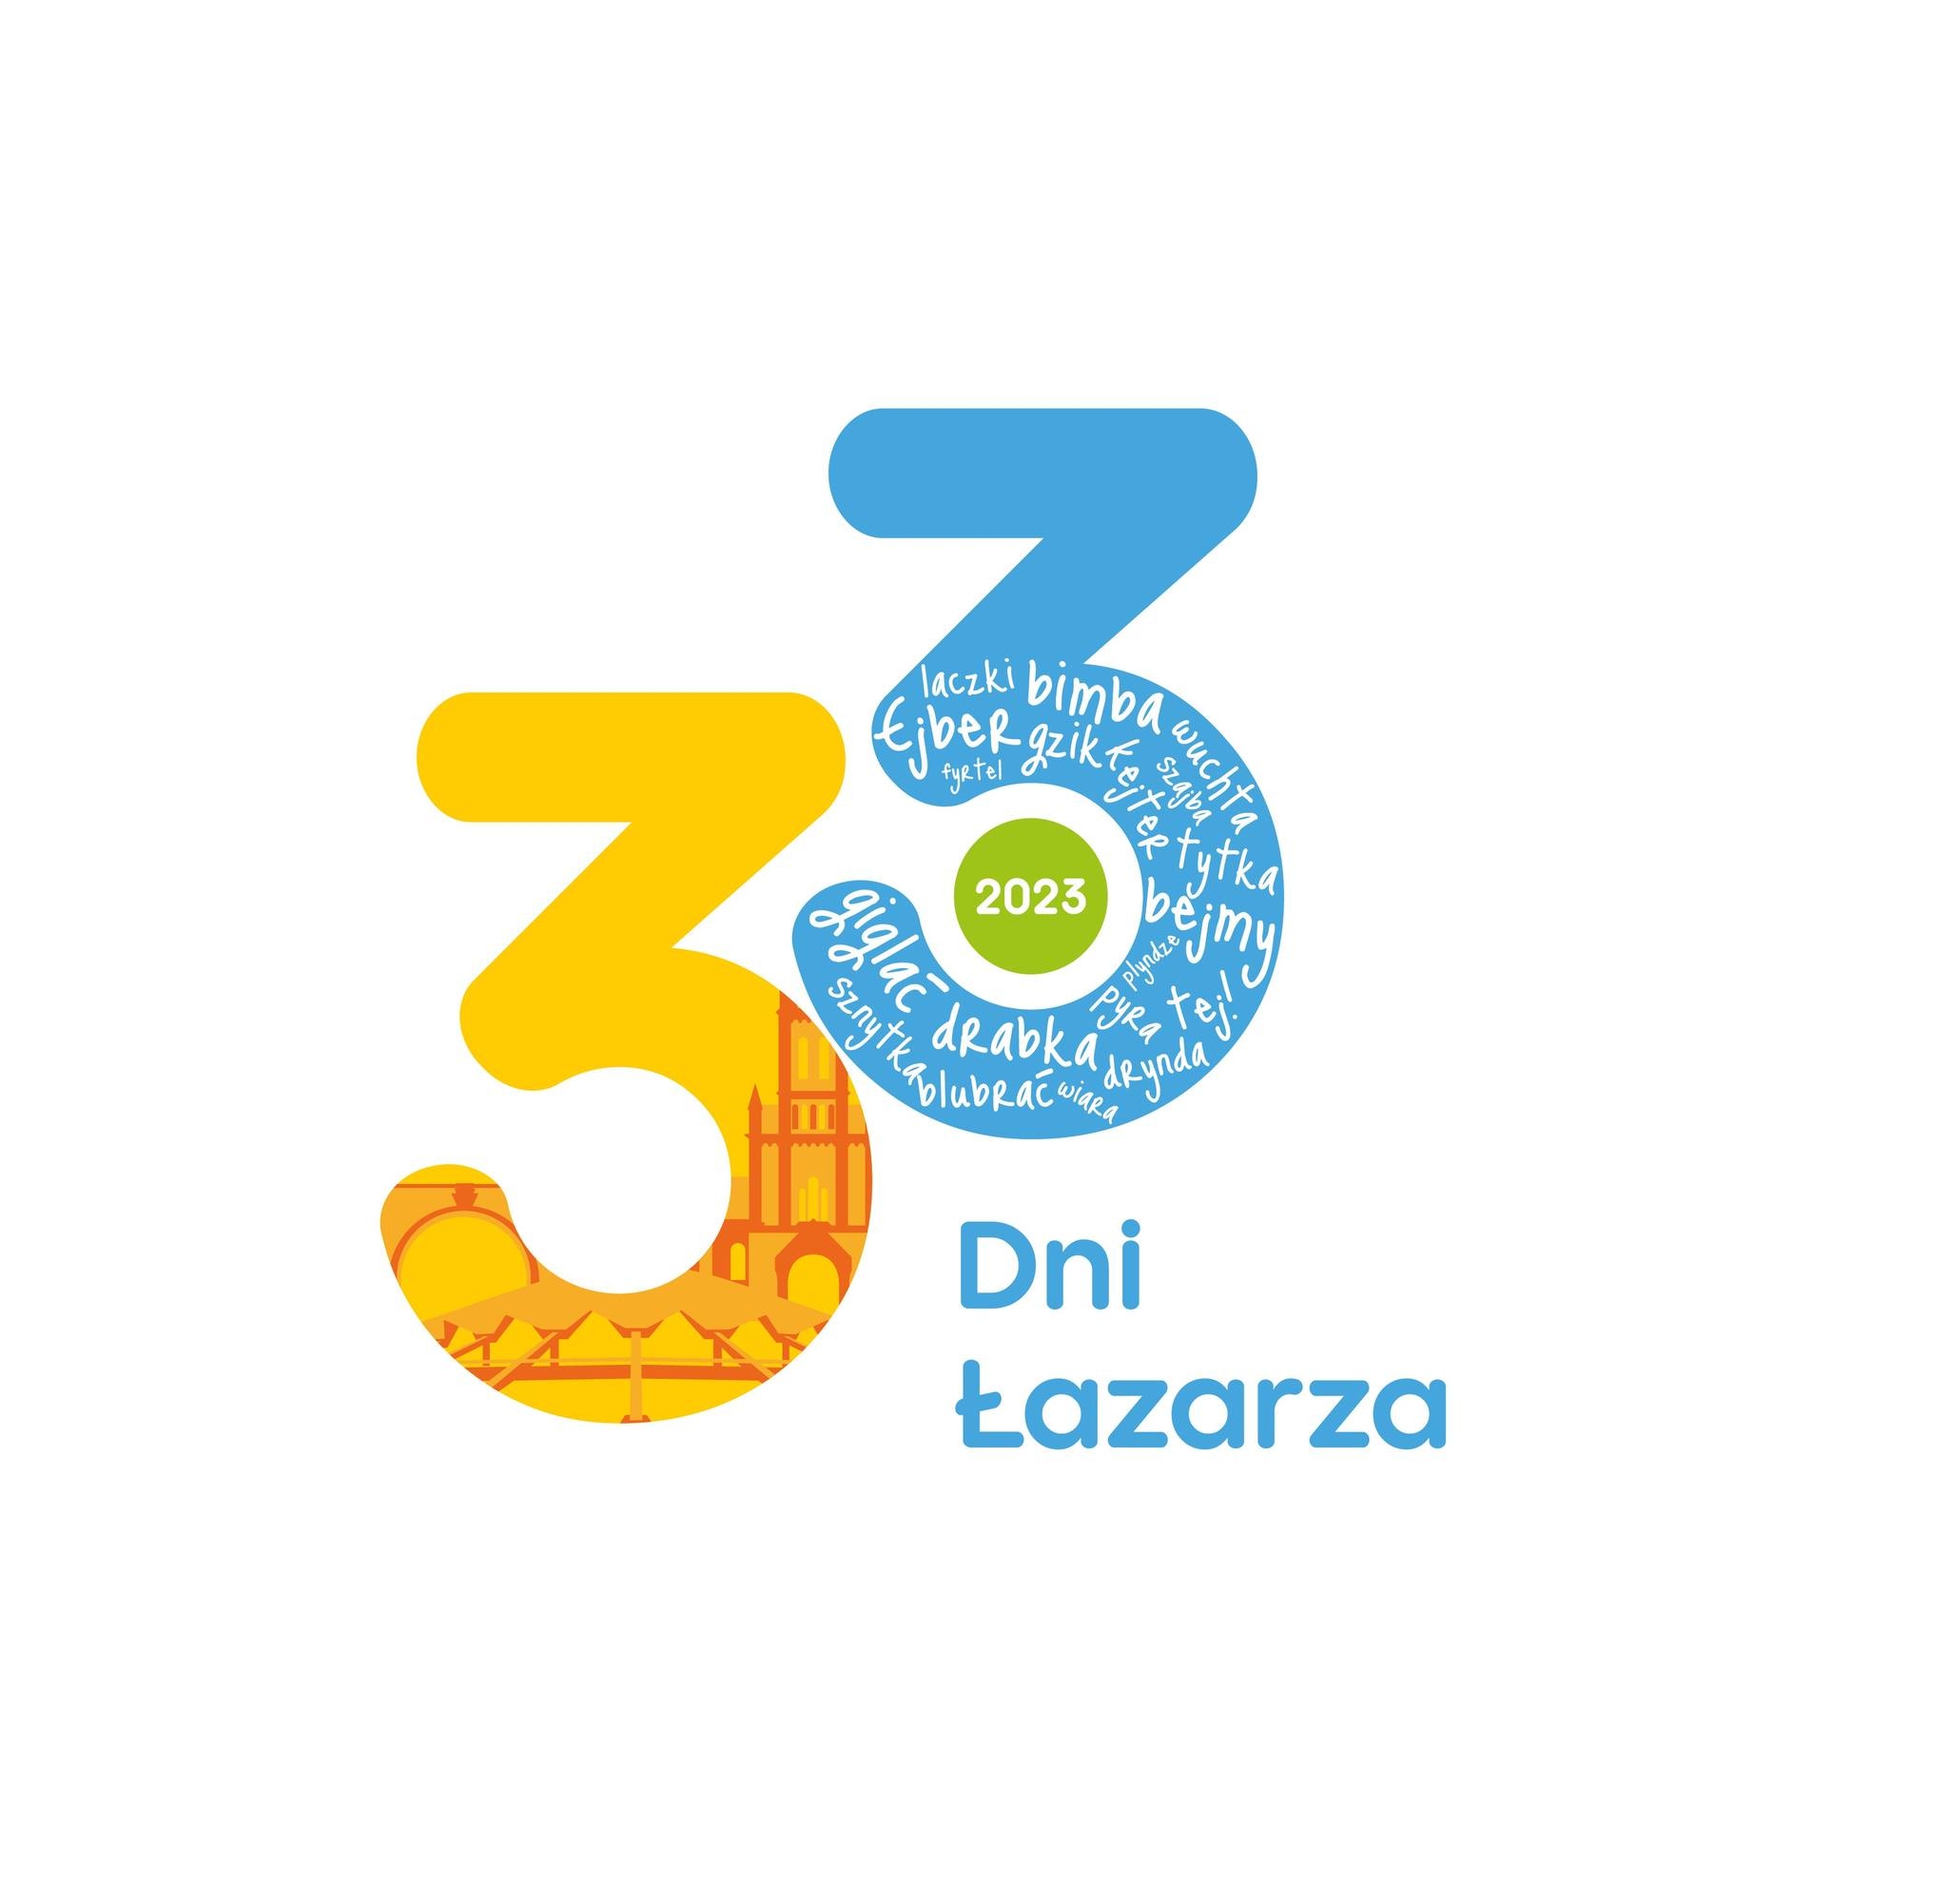 Logotyp trzydziestych trzecich Dni Łazarza składa się z liczby 33. Jedna trójka w kolorze żółtym zawiera elementy łazarskiej architektury, na przykład Arenę, druga trójka w niebieskim kolorze - słowa z poznańskiej gwary.